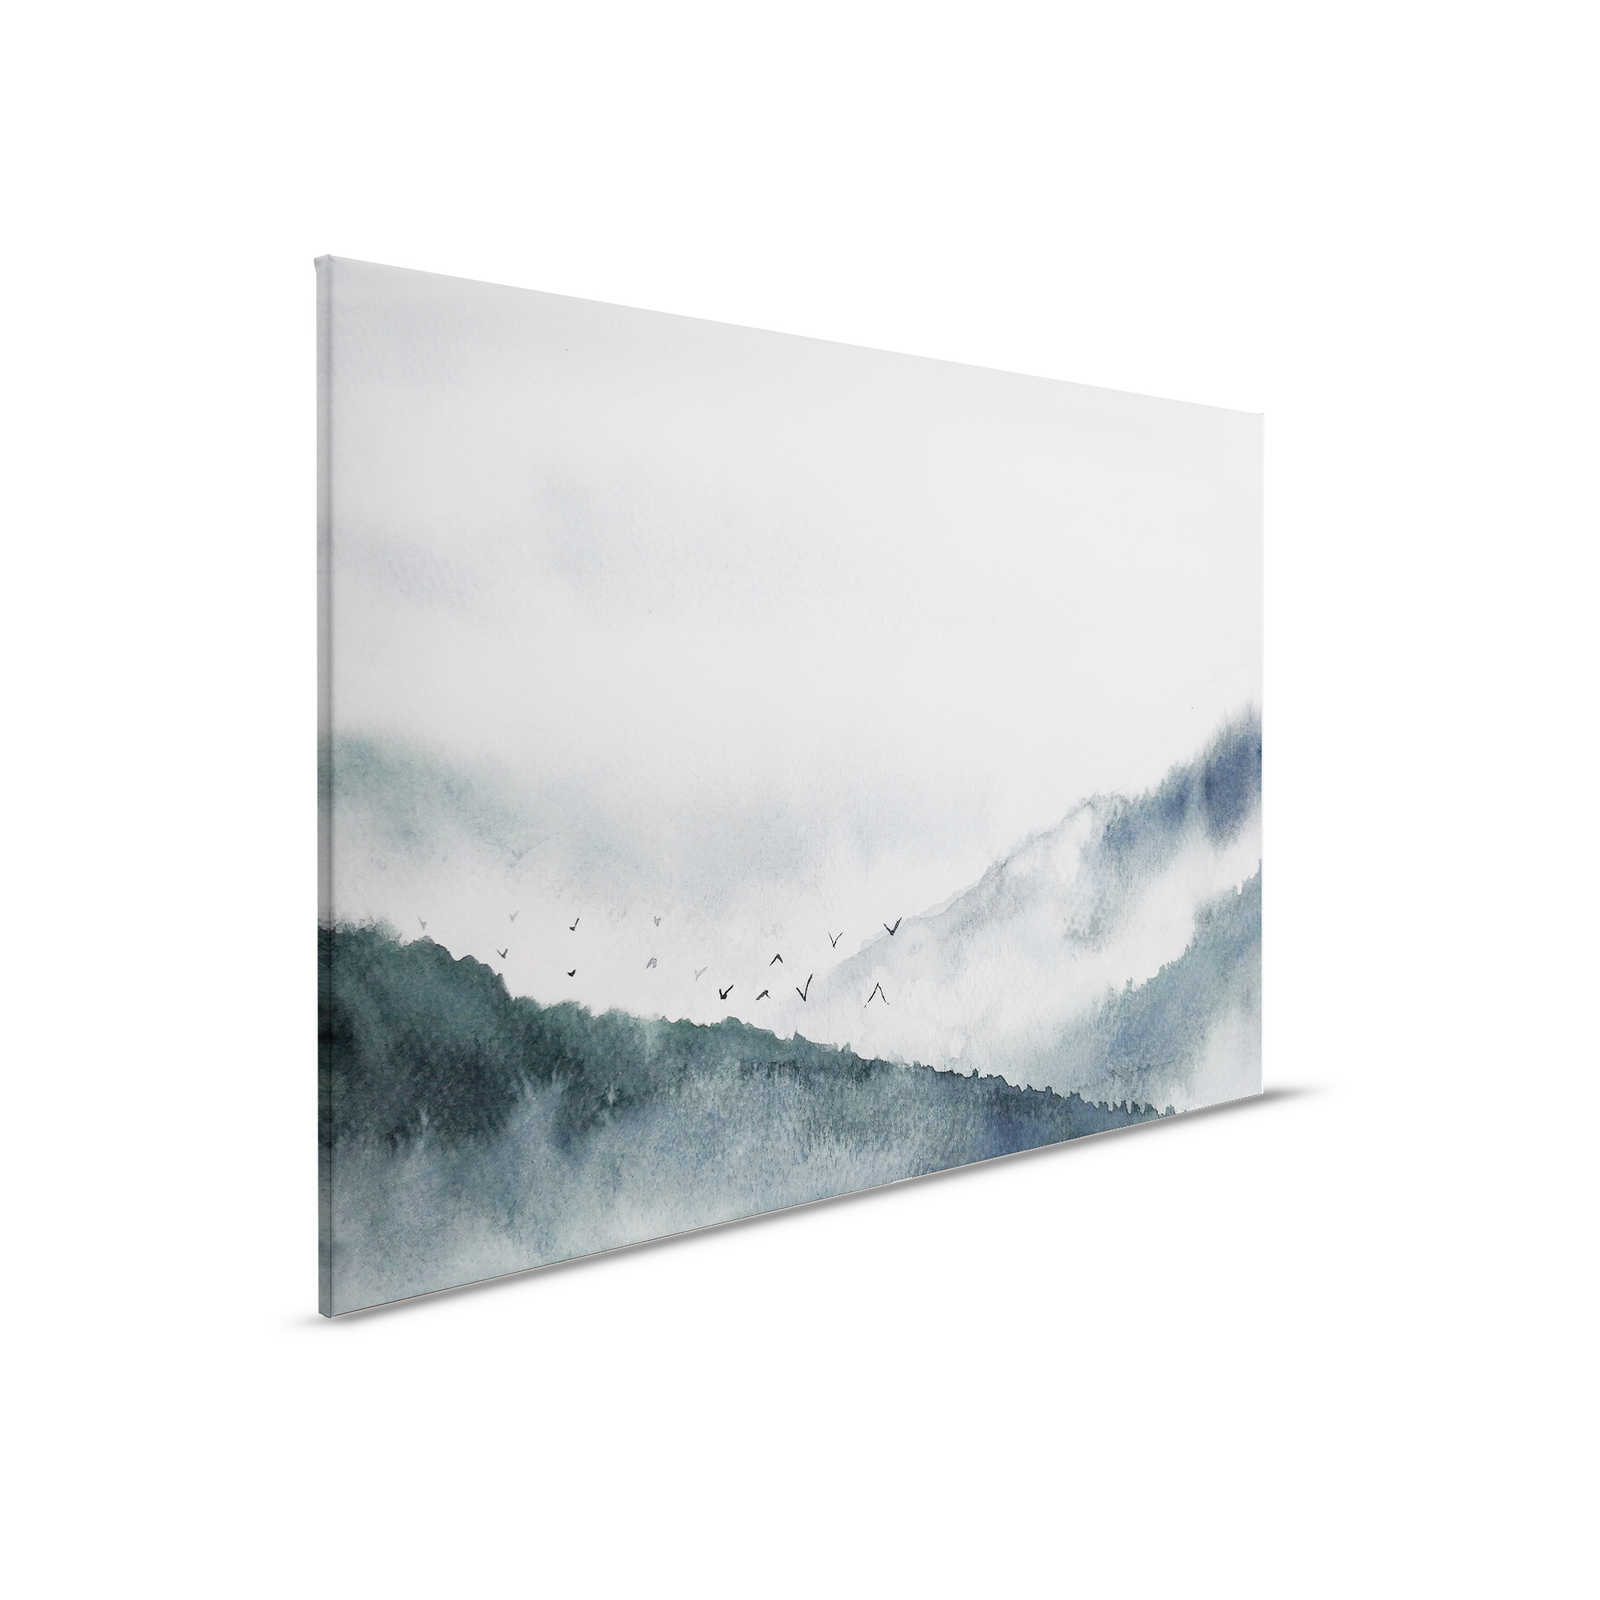         Leinwand mit nebeliger Landschaft im Gemälde-Stil | grau, schwarz – 0,90 m x 0,60 m
    